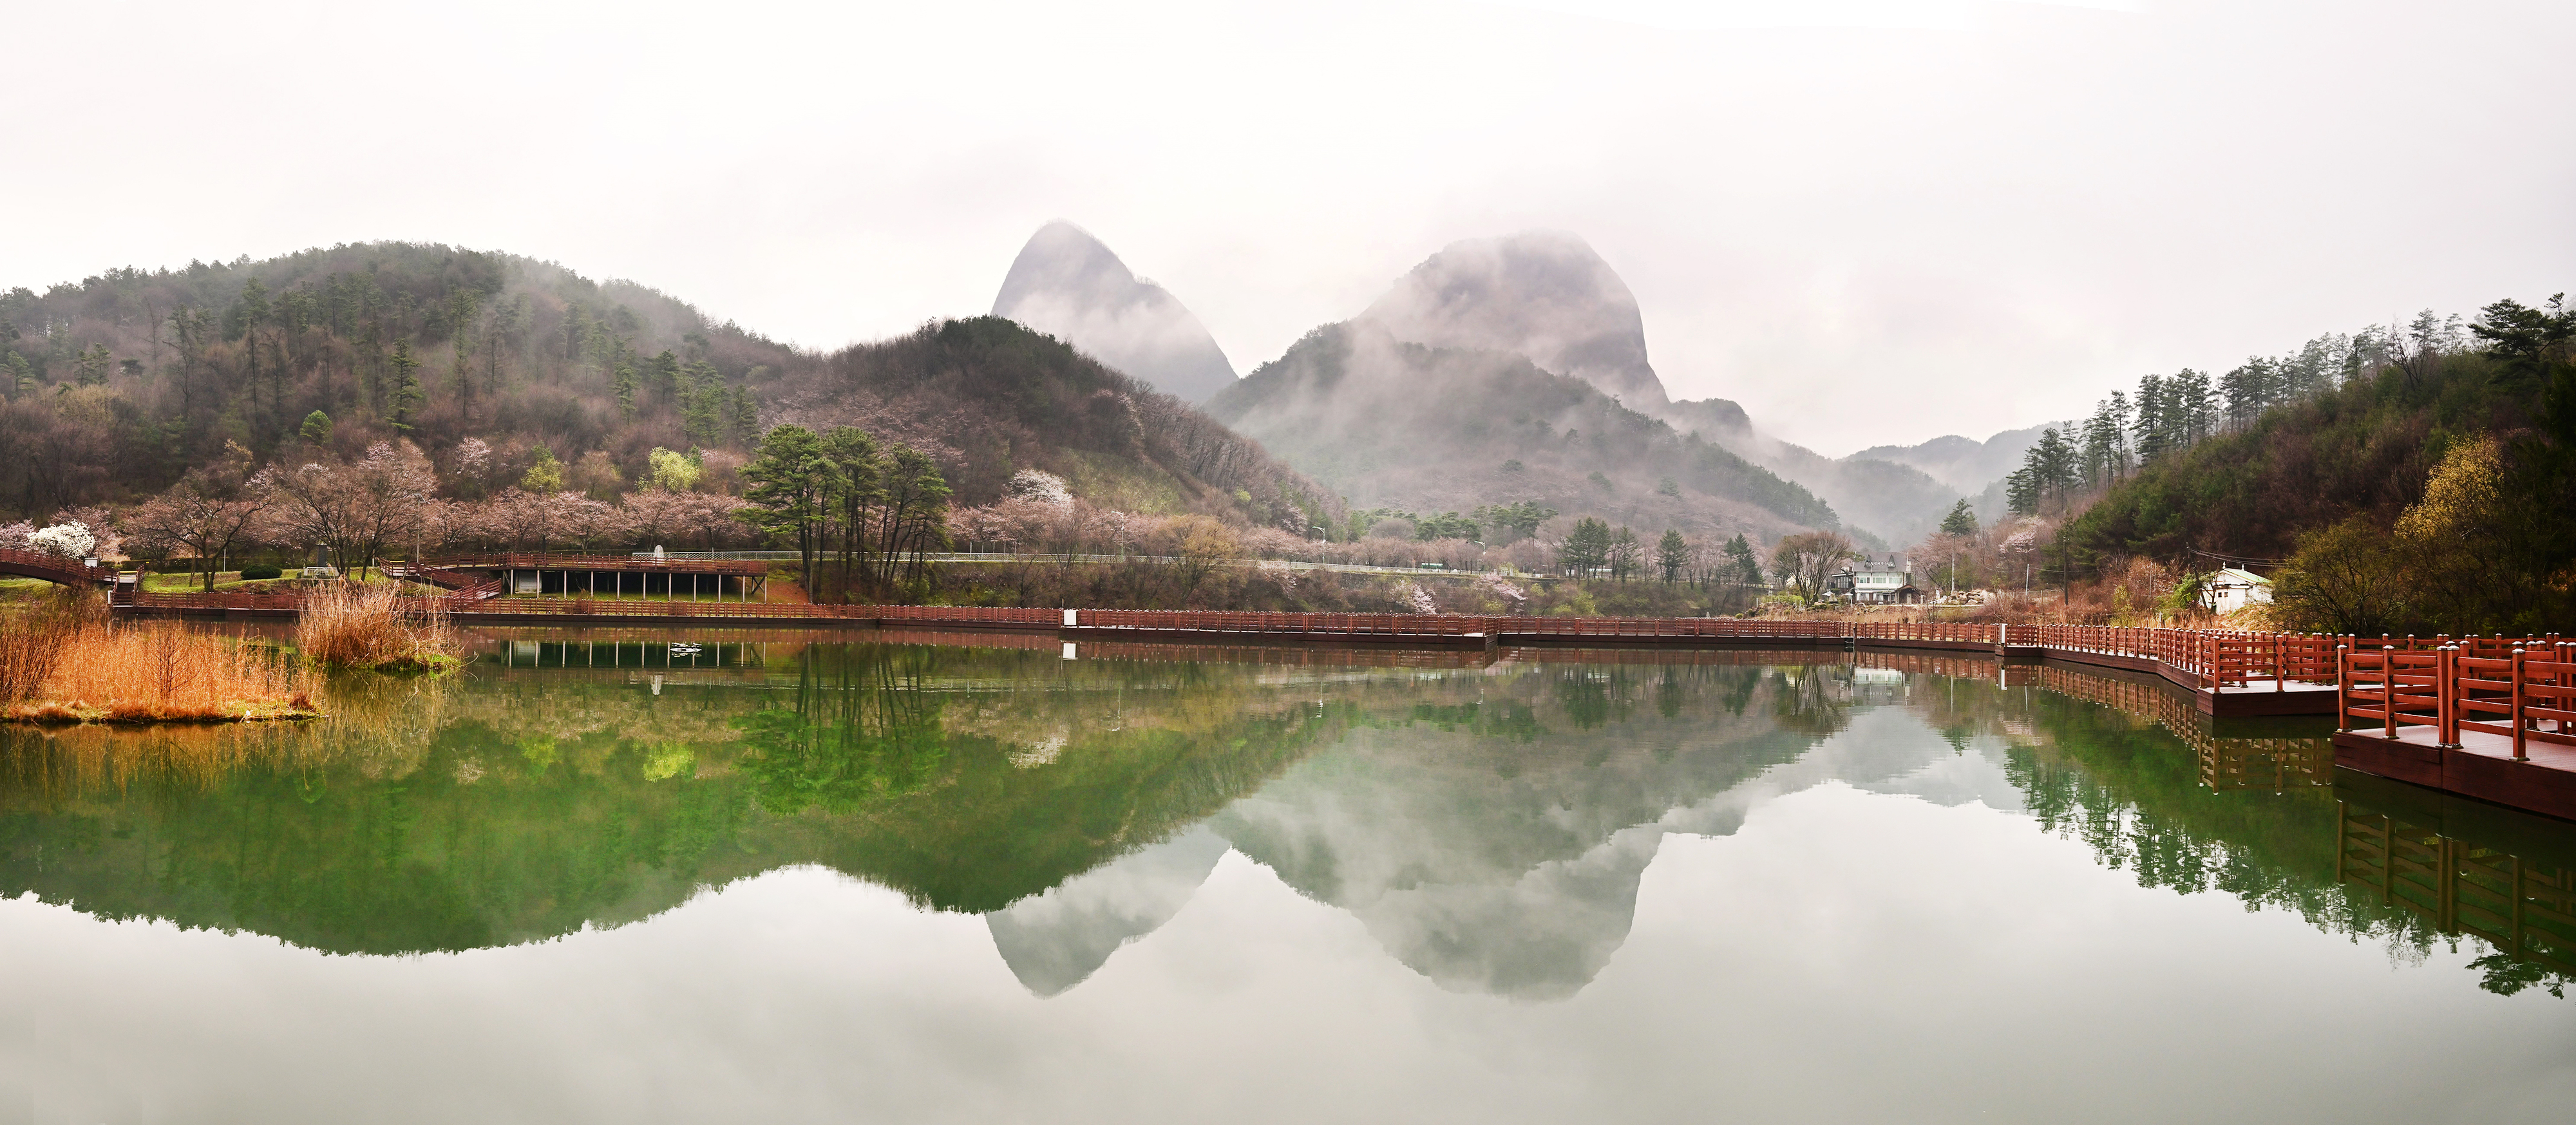 전북 진안의 마이산 일대에 봄이 한창이다. 사진은 마이산 북부의 사양제. 마이산 전경을 가장 잘 담아내는 저수지로 꼽힌다.